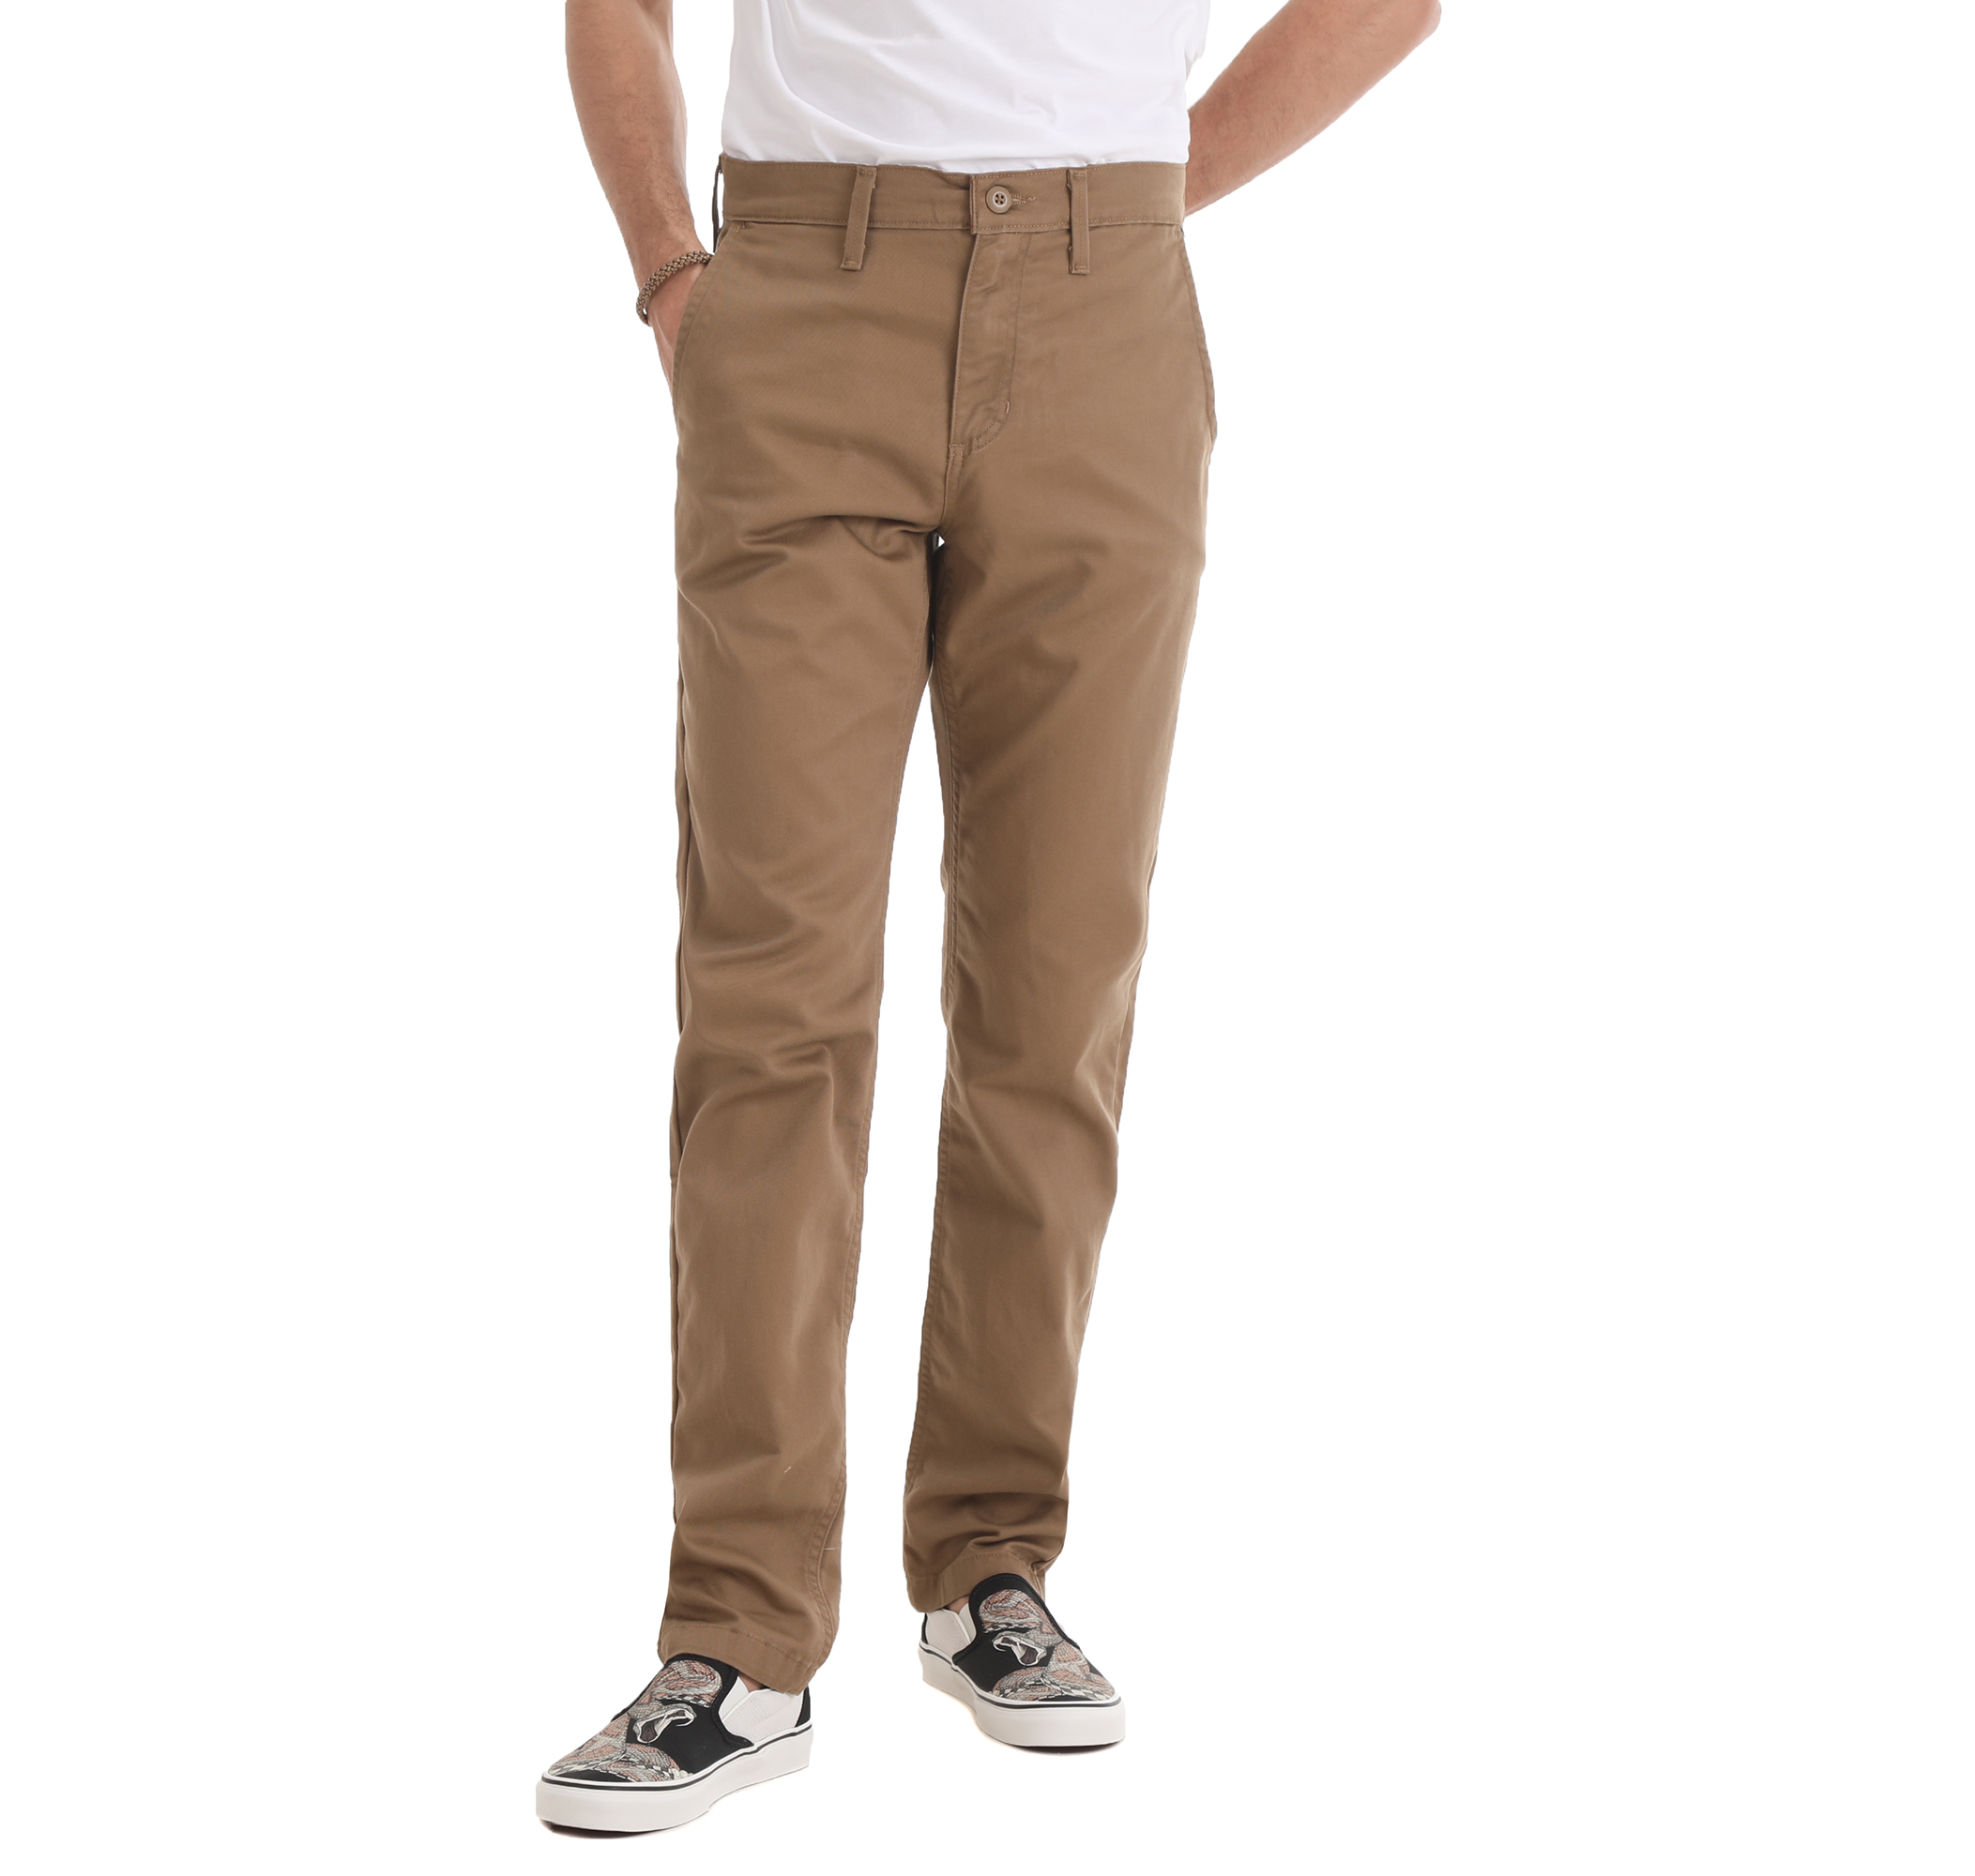 Мужские брюки Vans Mn Authentic Chino Slim Pant Pantolon